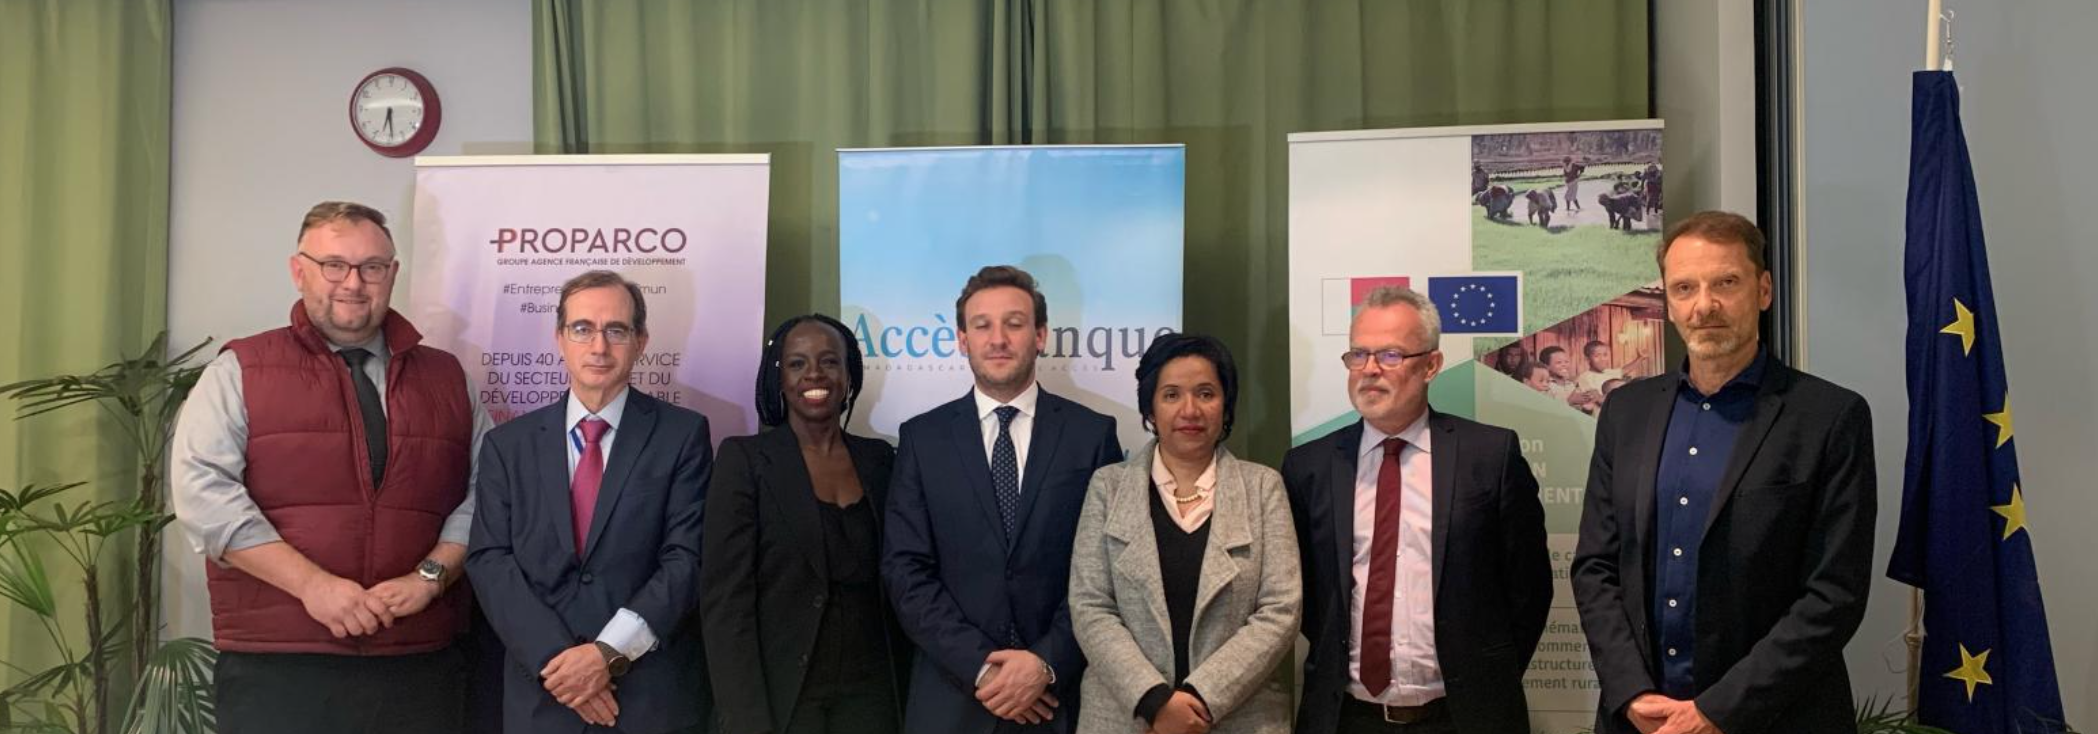 L’UE et la France soutiennent le développement de l’inclusion financière à Madagascar, à travers un financement de Proparco au bénéfice d’AccèsBanque Madagascar